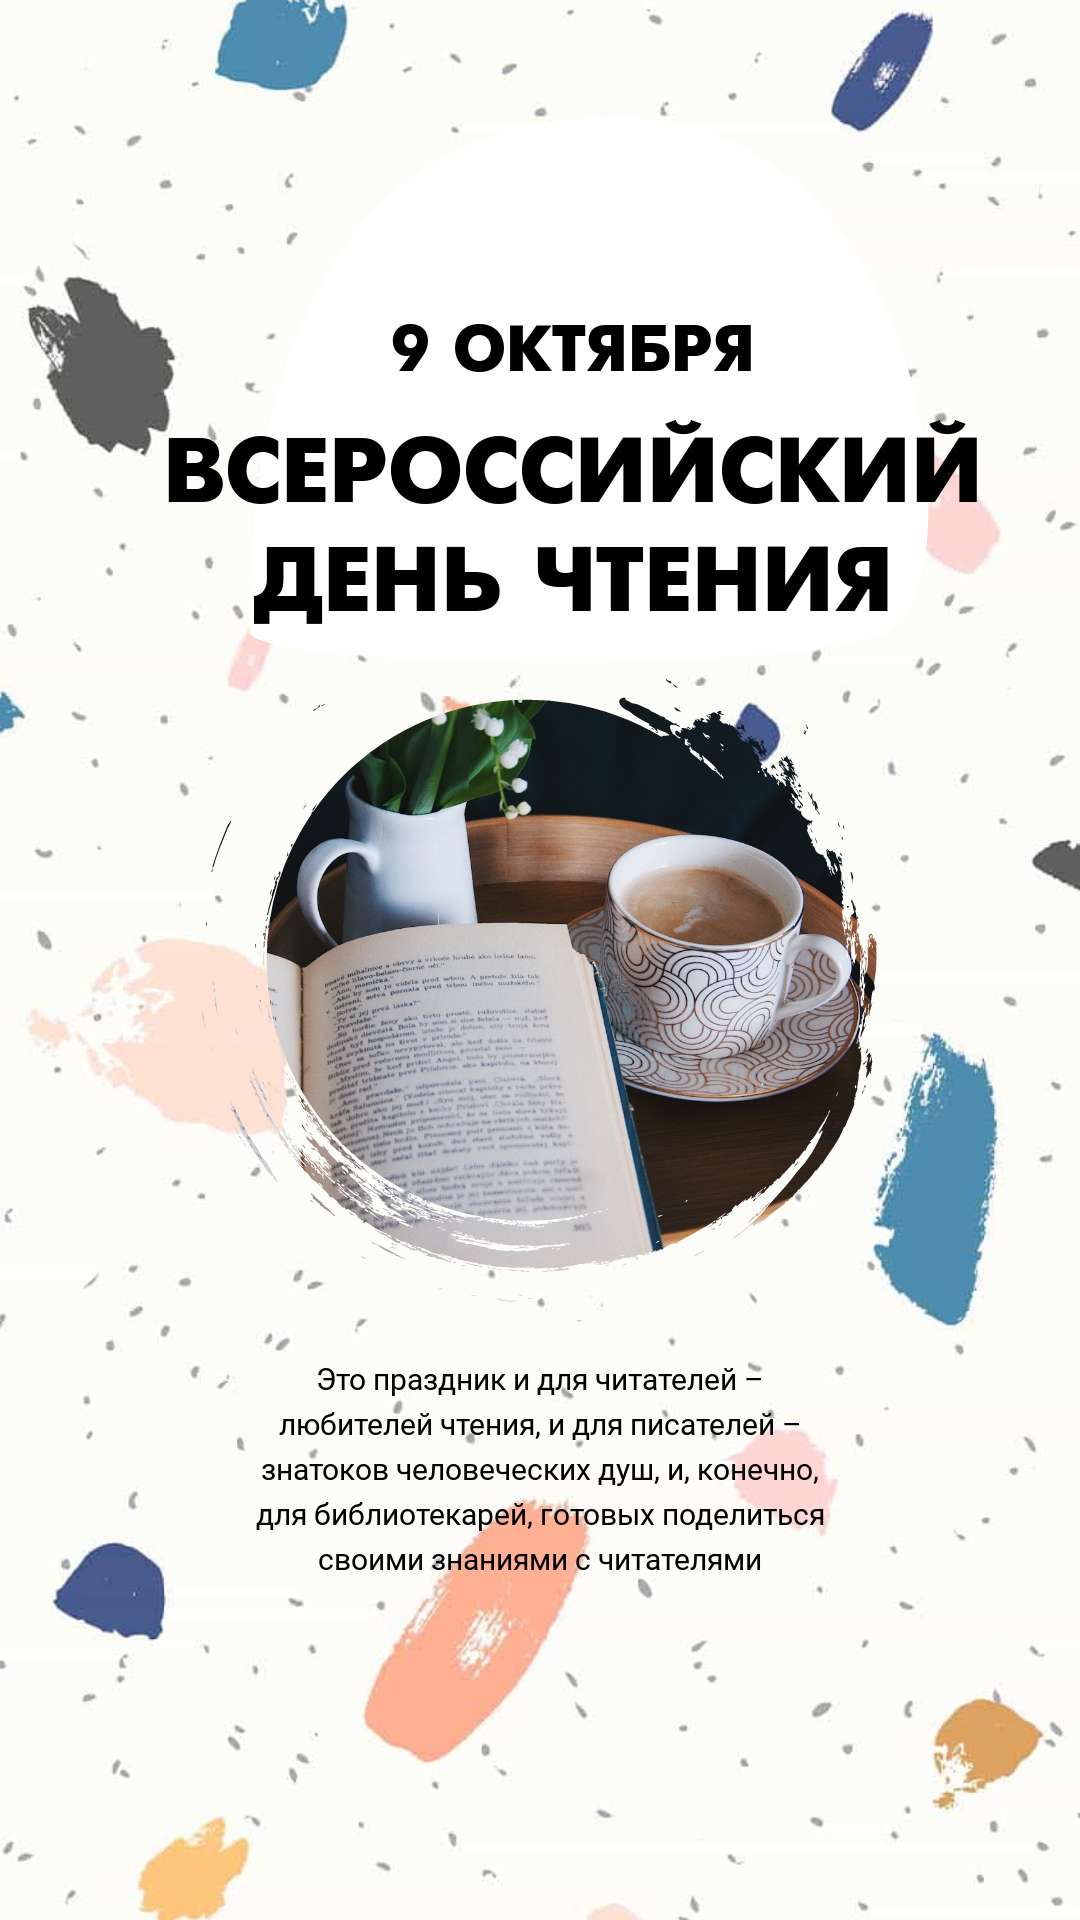 Задорная открытка сторис в день чтения с уютным фото чашки кофе и открытой книги на разноцветном фоне